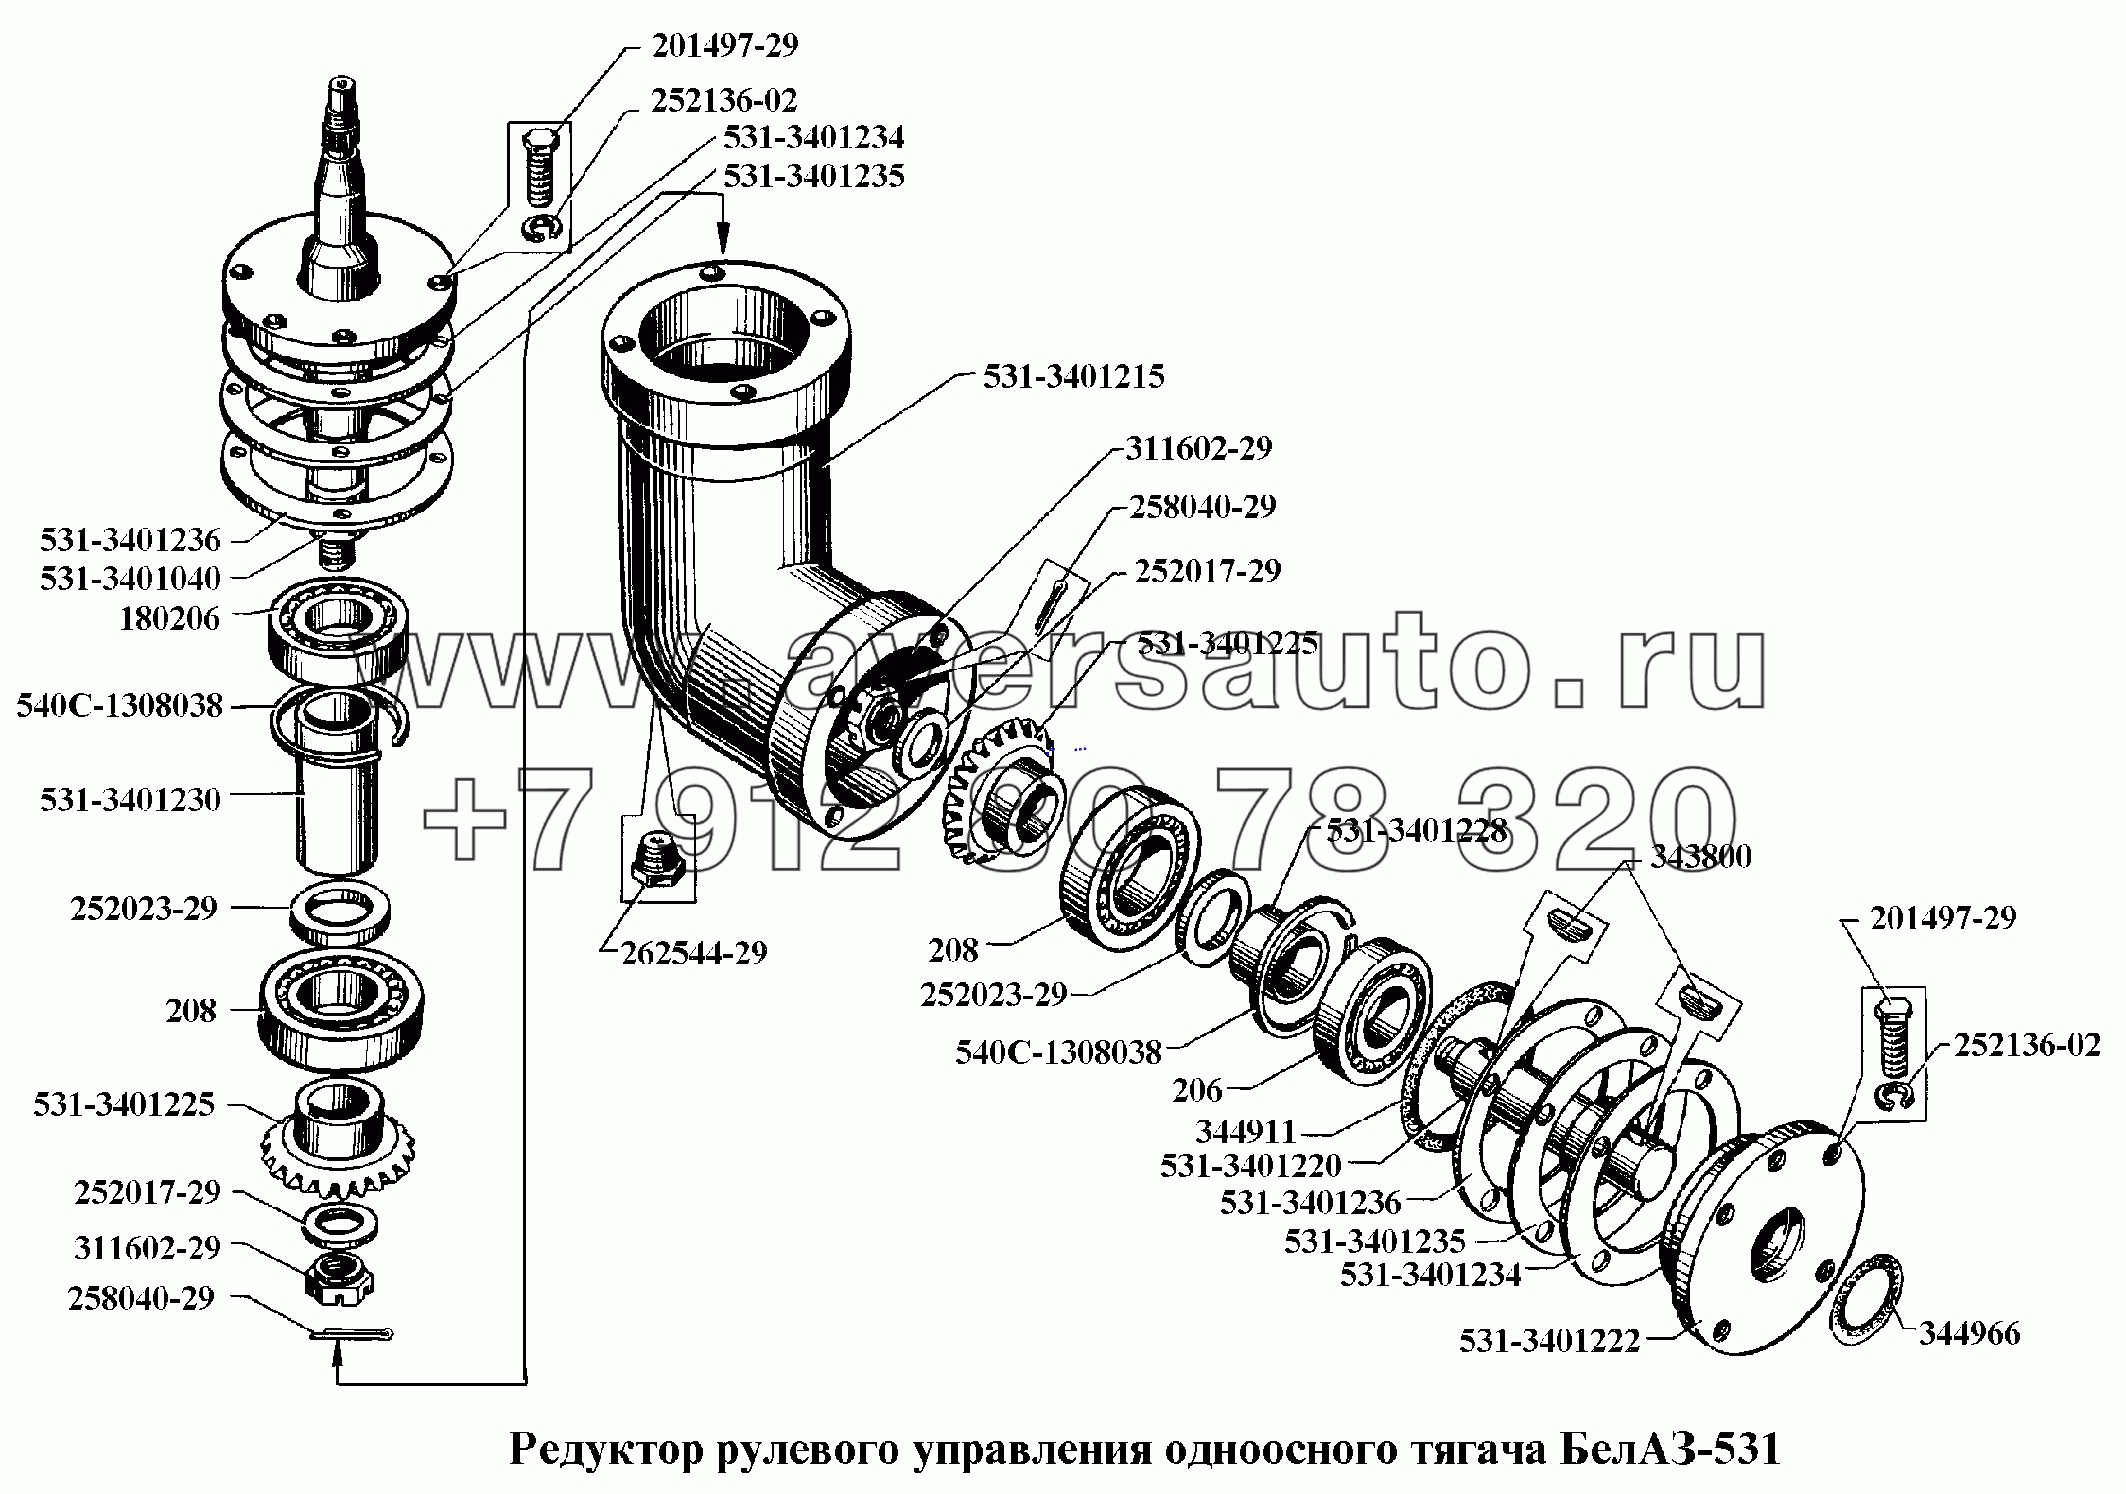 Редуктор рулевого управления одноосного тягача БелАЗ-531